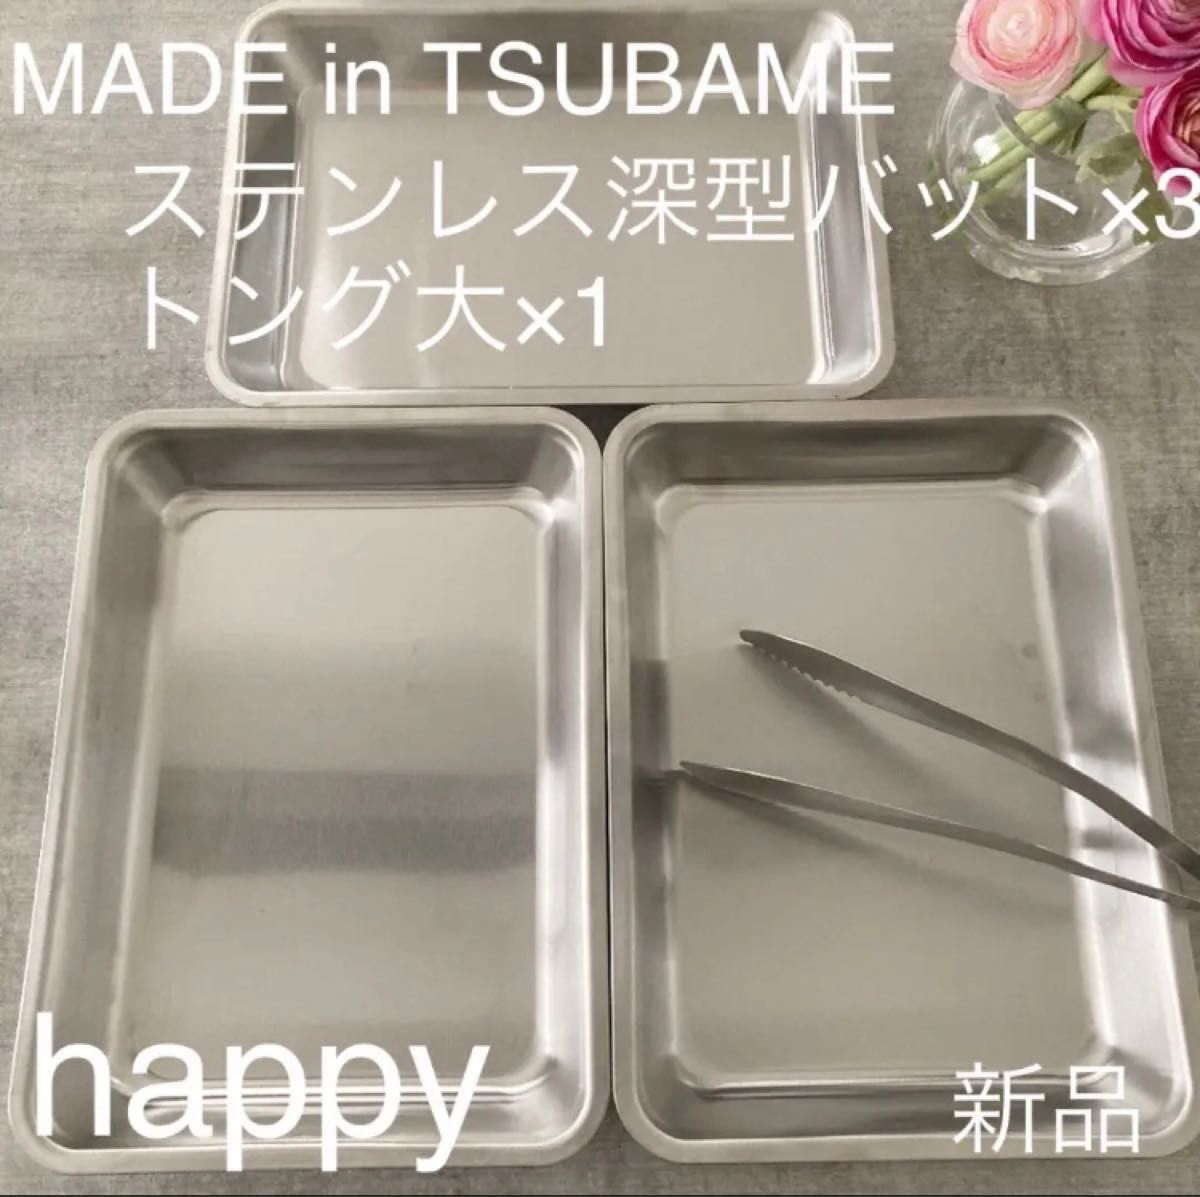 トング made in TSUBAME 燕三条 ツバメ 